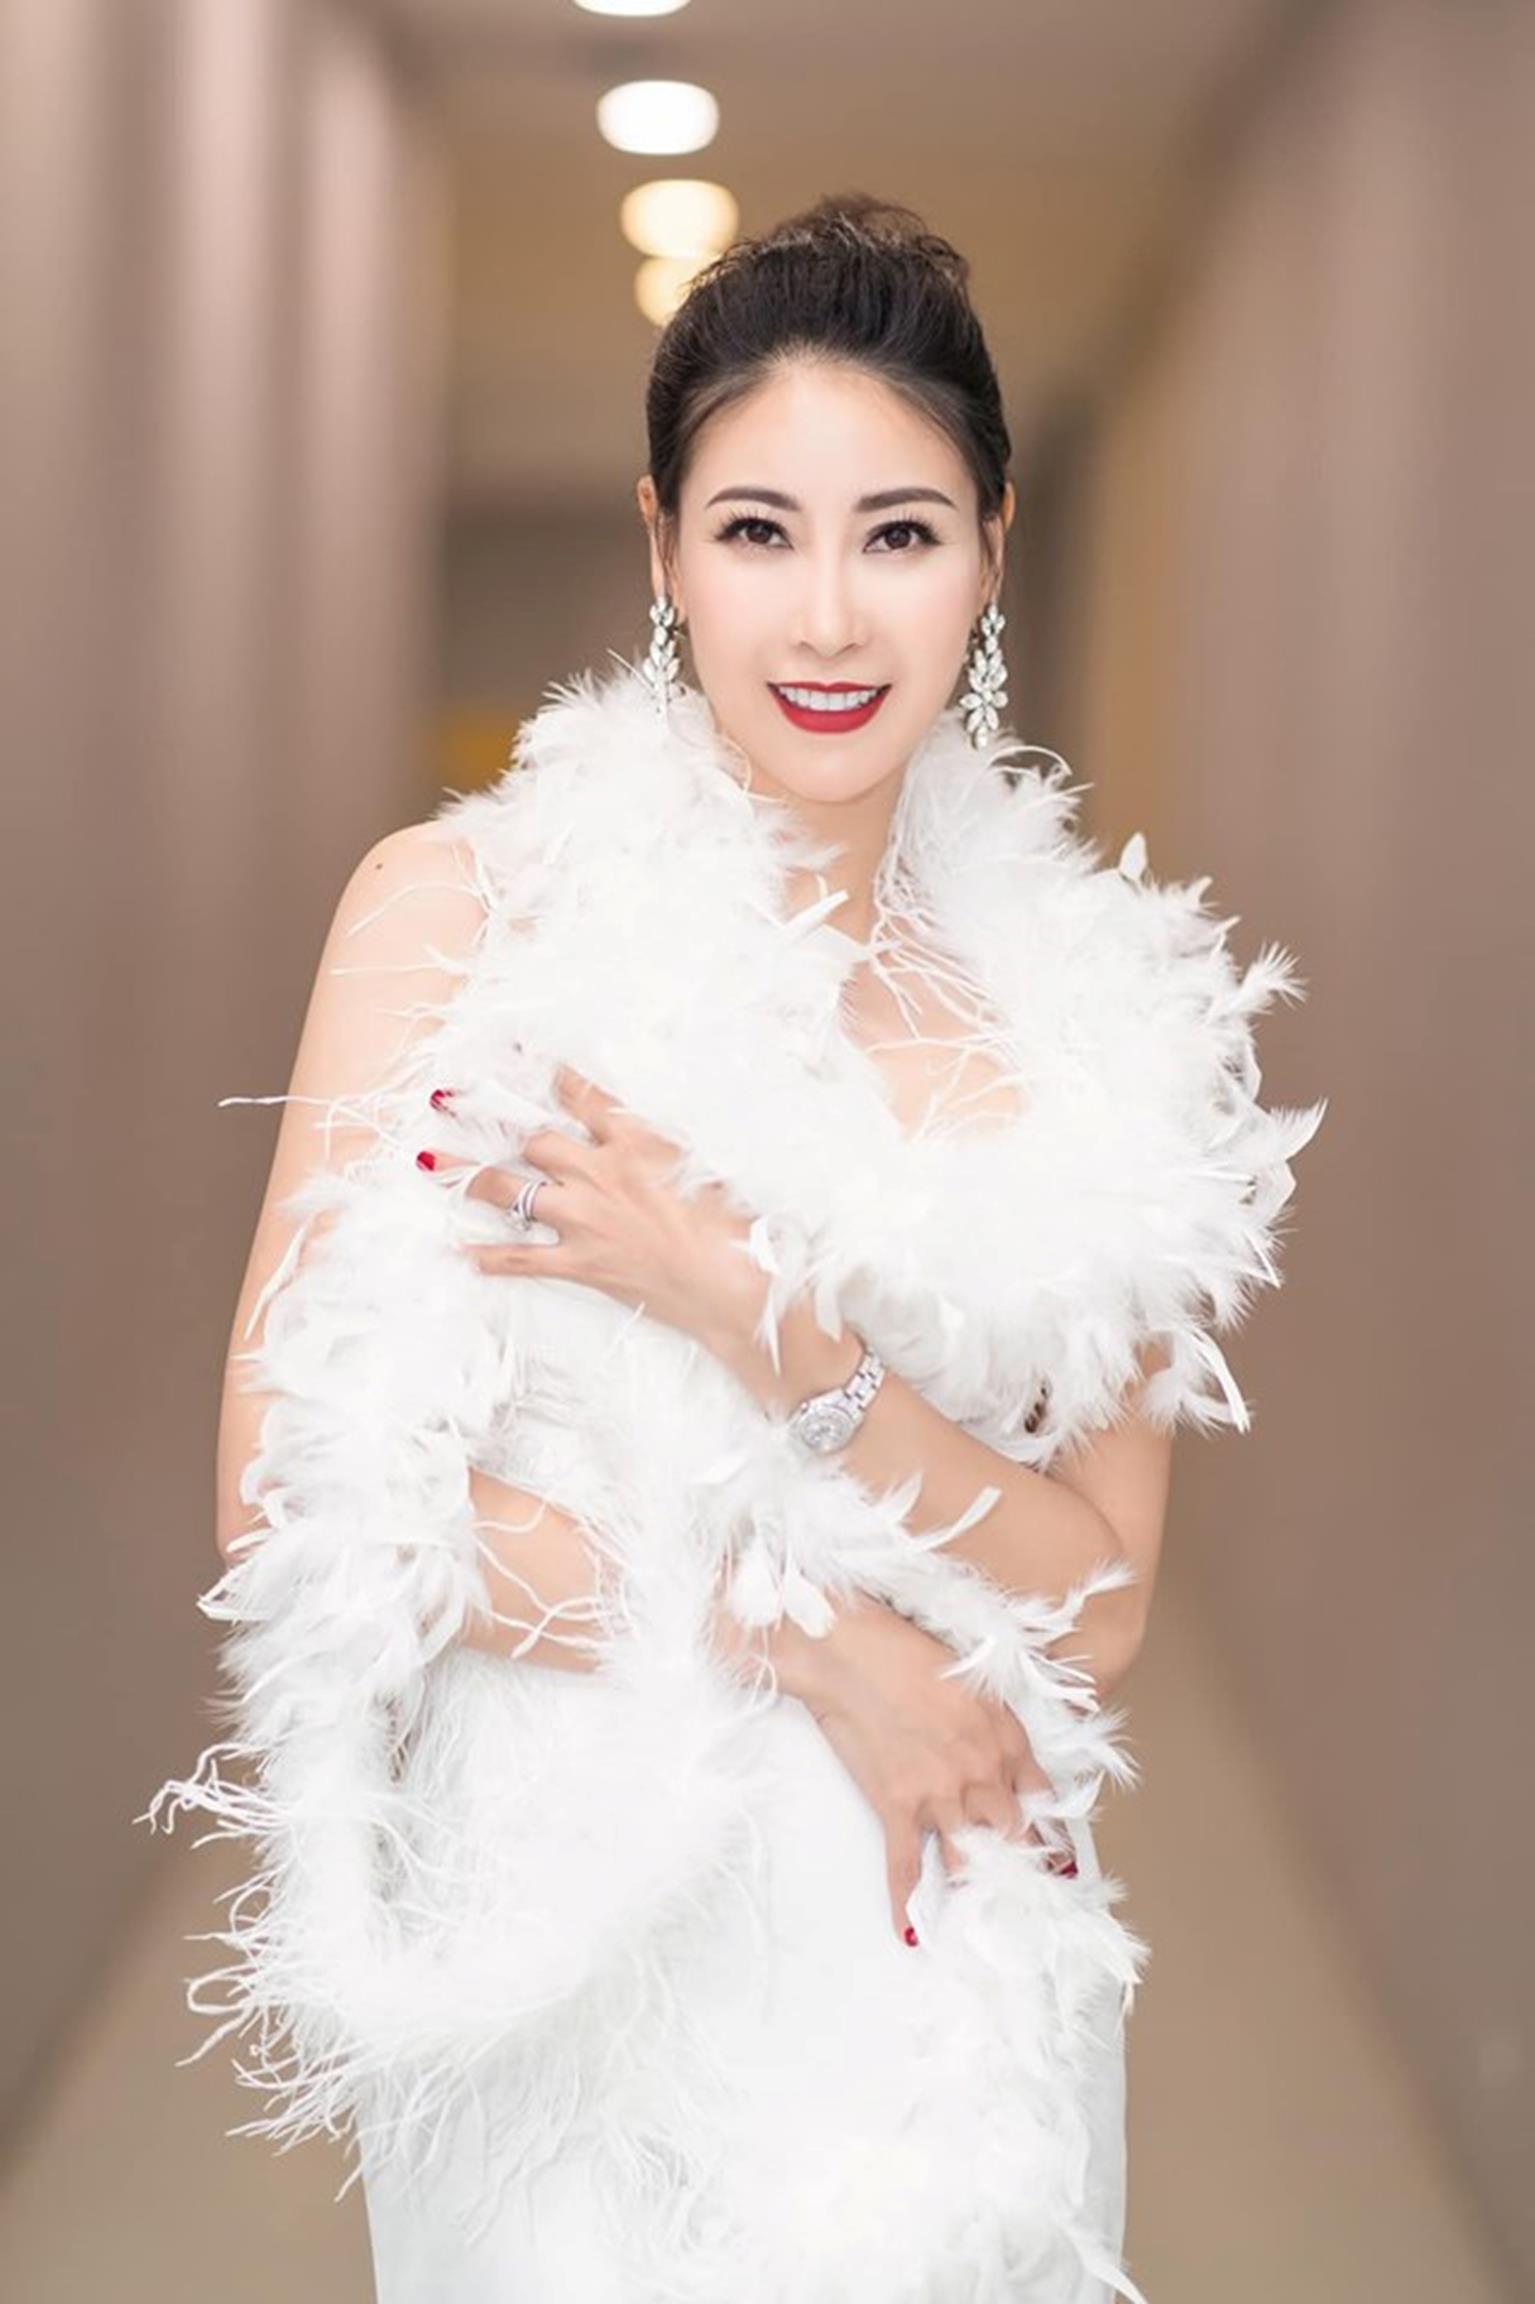 Hoa hậu Hà Kiều Anh mặc váy đẹp như thiên nga, cả showbiz ngước nhìn-2